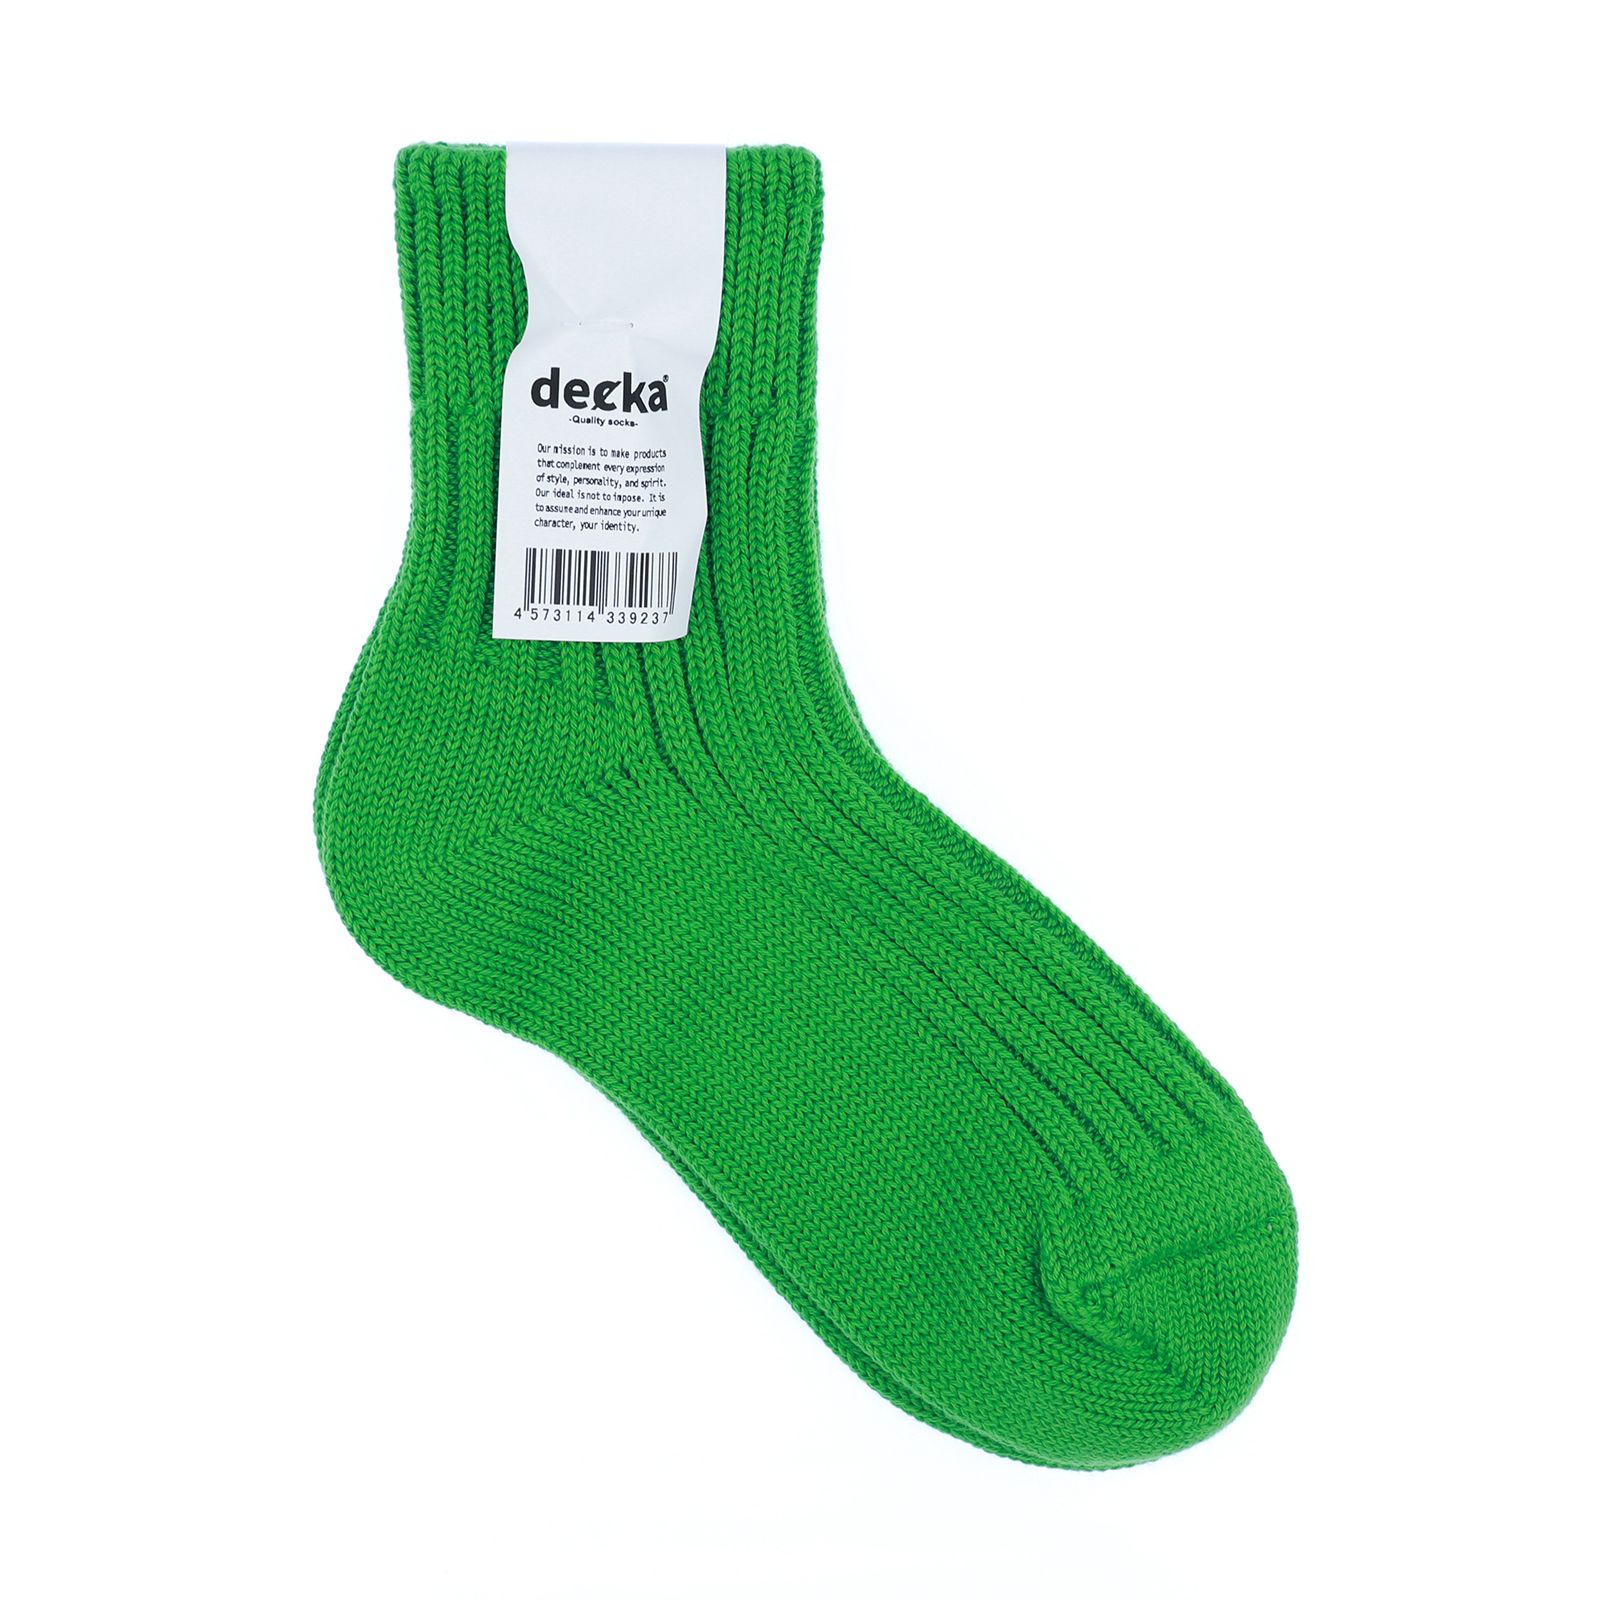 decka quality socks - Low Gauge Rib Socks Short Length ネオン